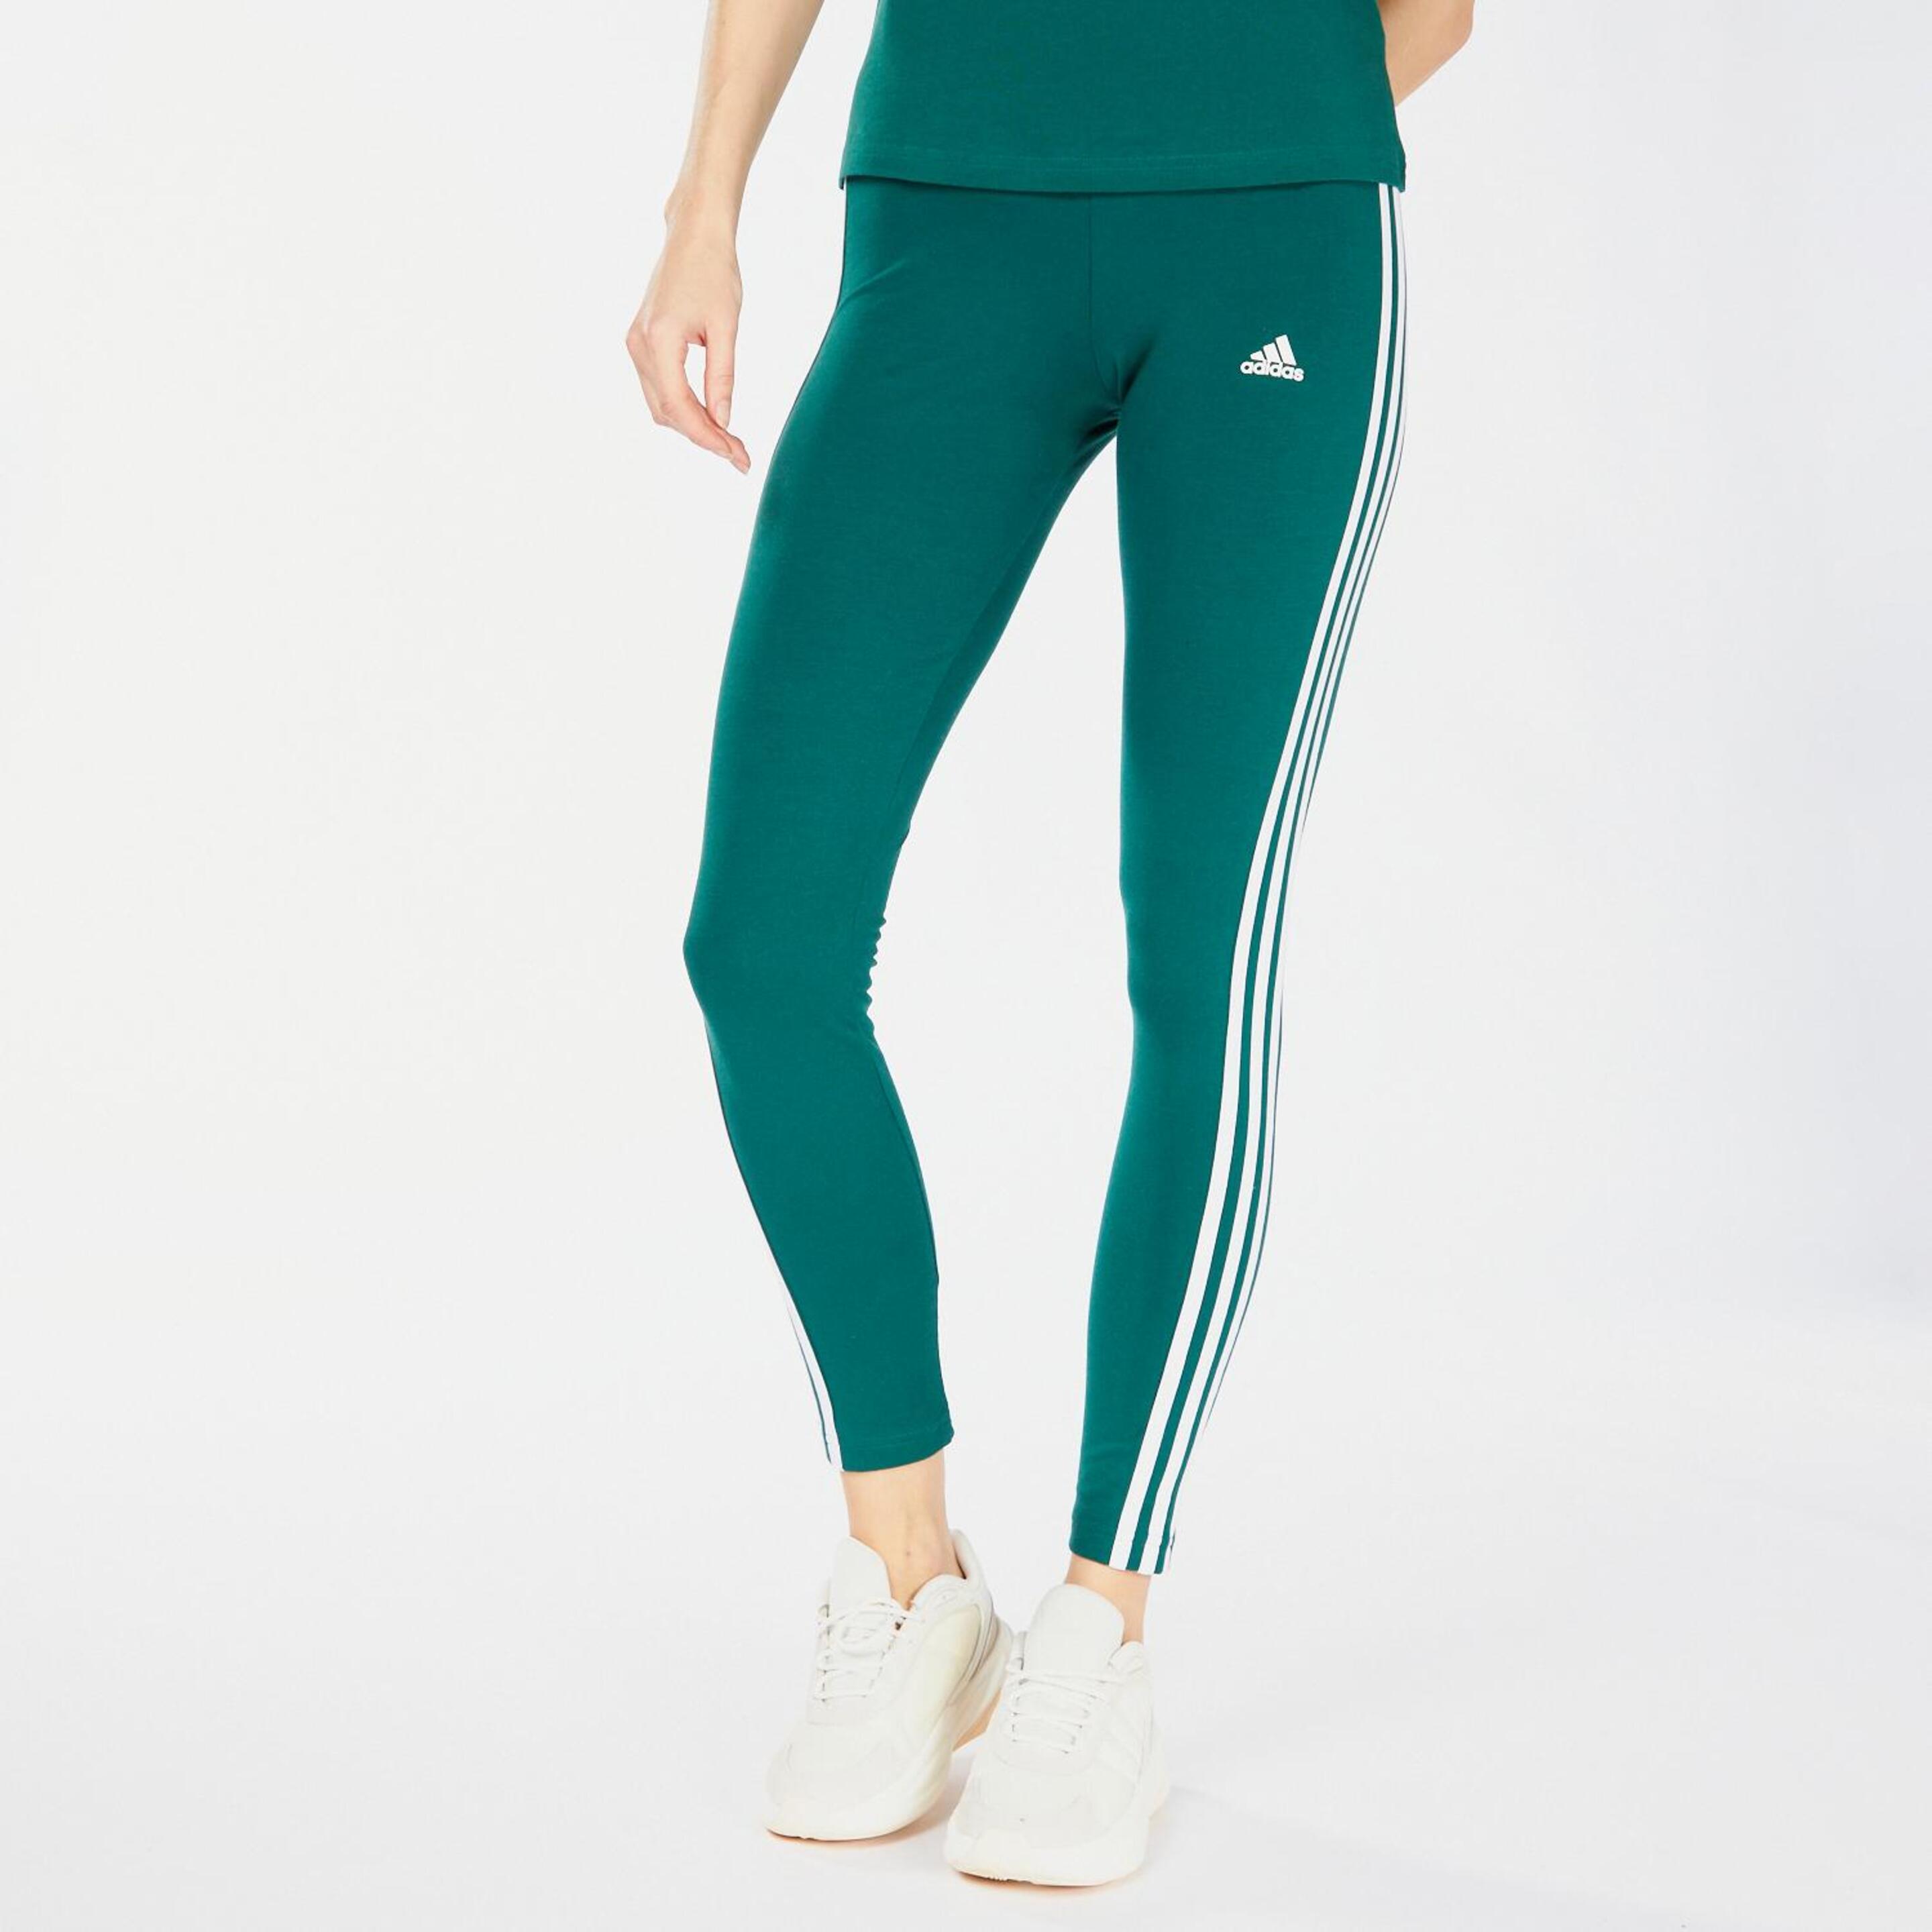 adidas 3 Stripes Green - verde - Mallas Tobilleras Mujer